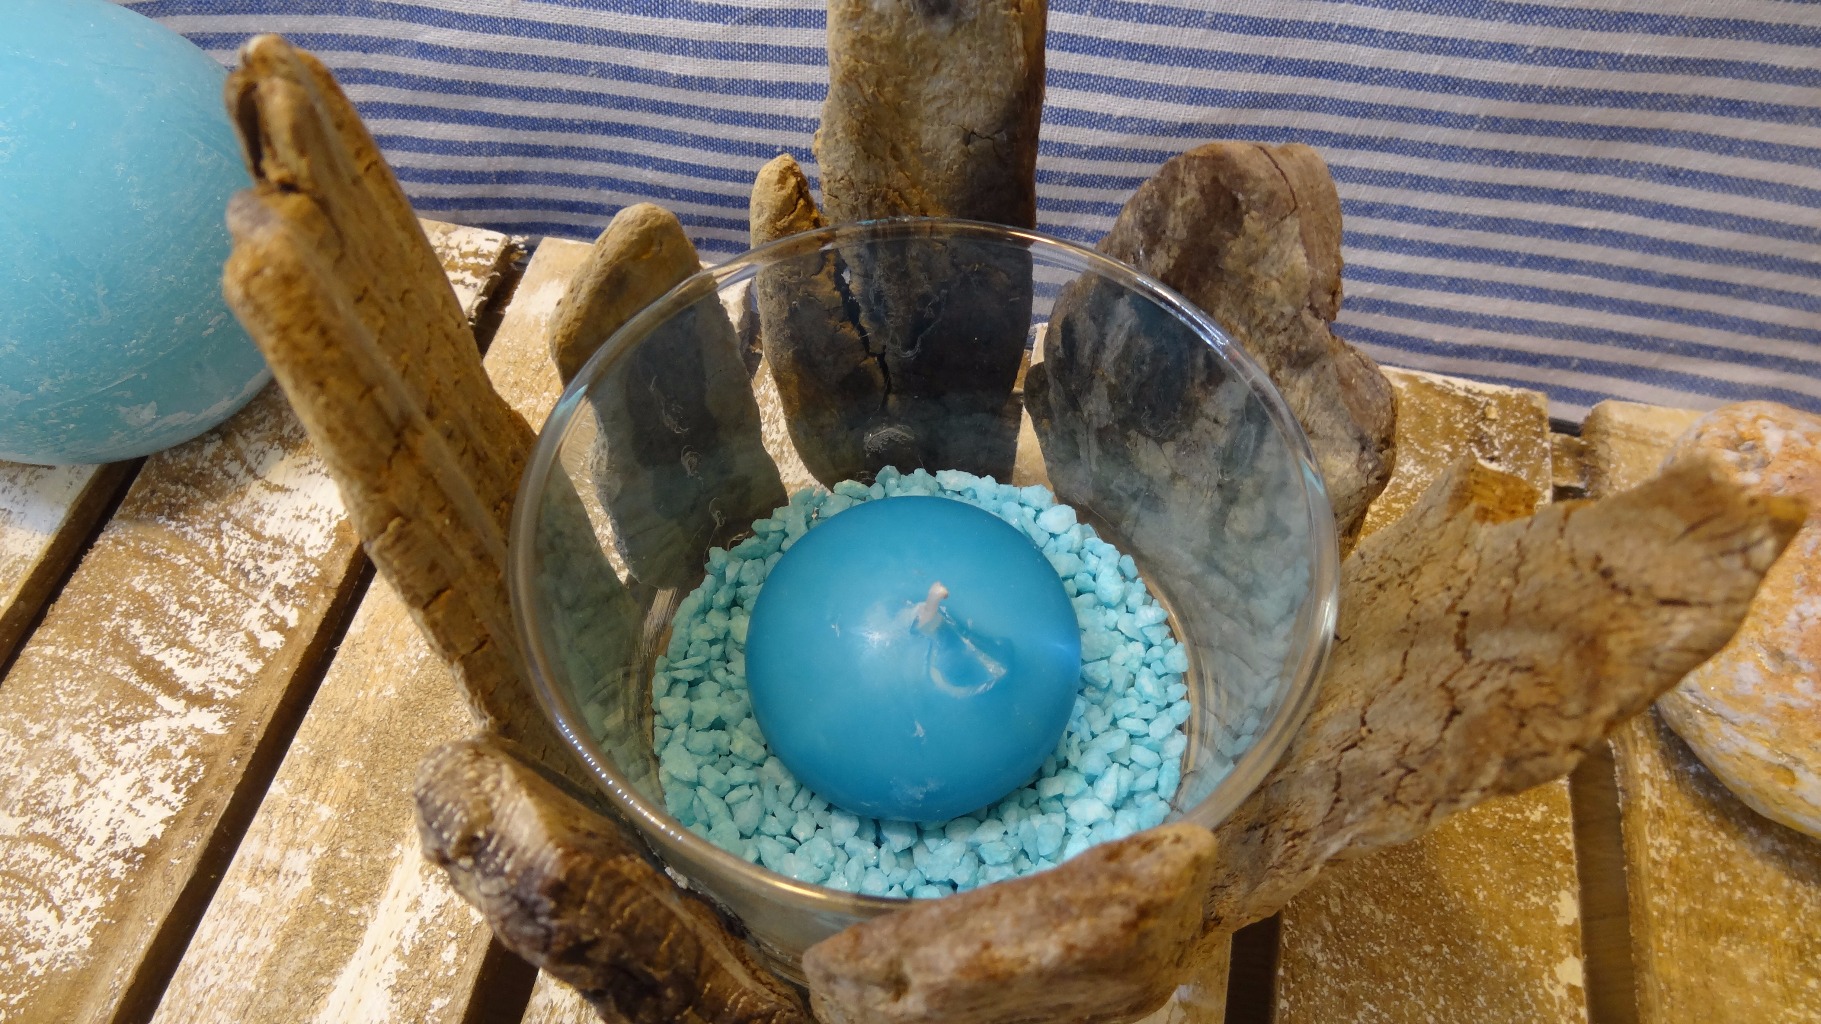 Photophore composé d'un verre recyclé , de bois ramassés sur les dunes.
Du sable et une bougie bleu .